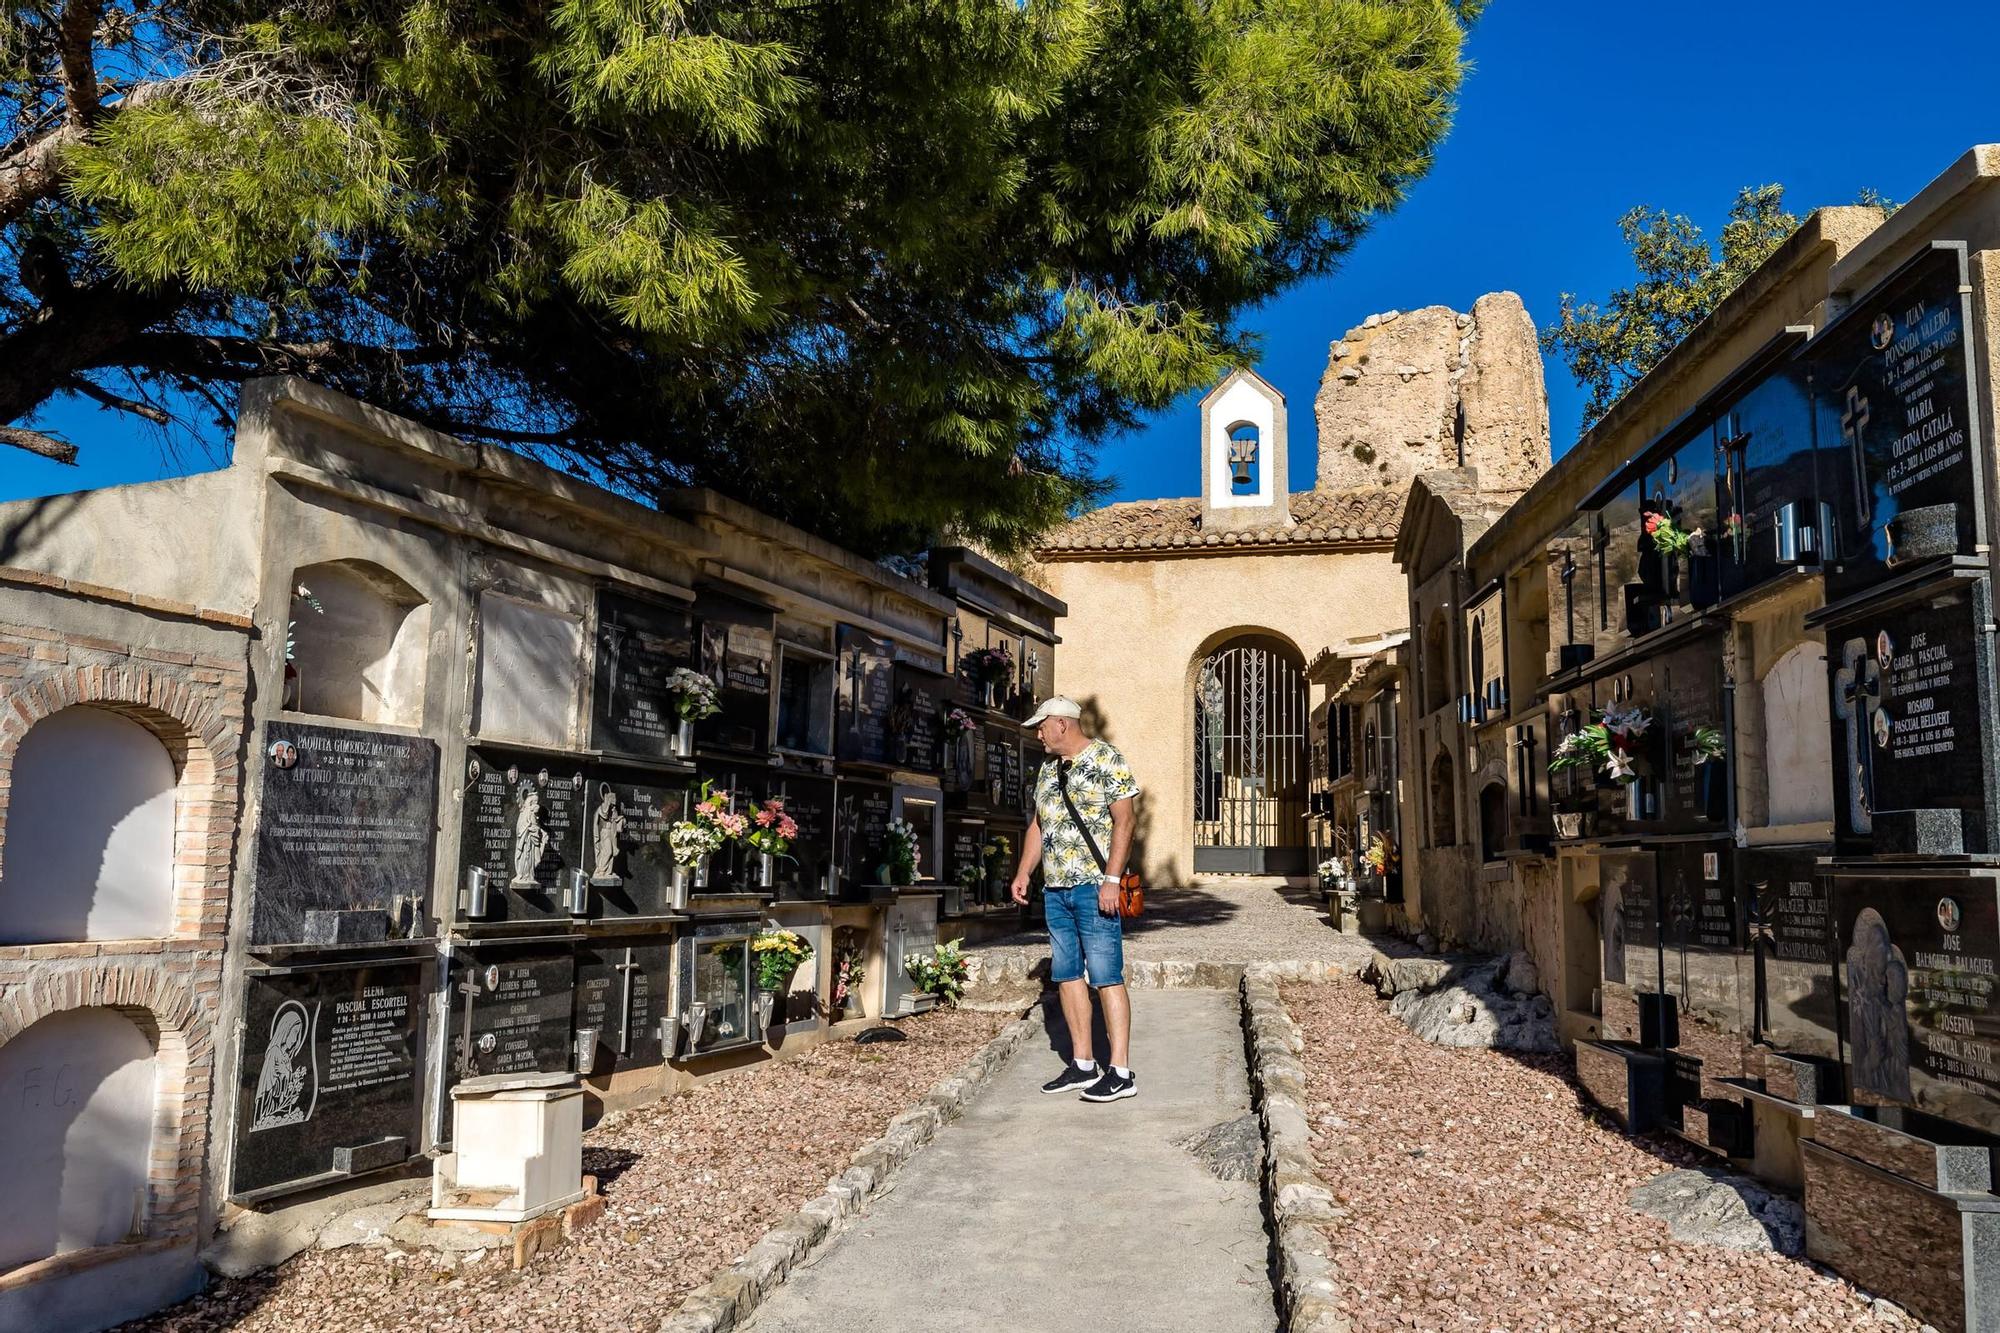 Cementerios como el antiguo de Polop, ya sin uso, el de Guadalest o el de Sella atraen a los visitantes por sus singularidades y el enclave en el que se ubican